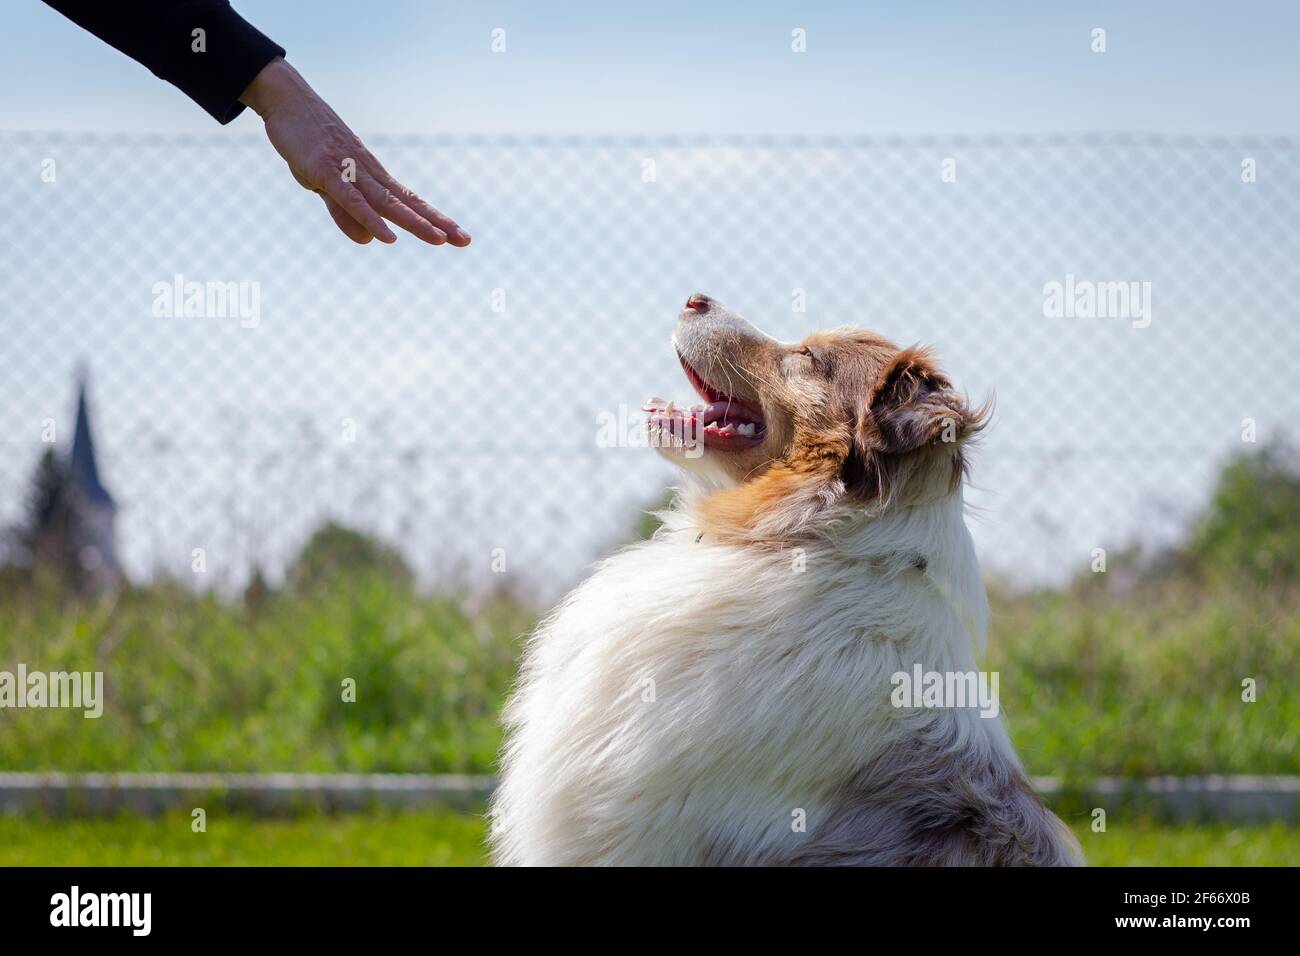 Addestrando Pastore Australiano. Il comando gestuale della donna resta a mano al suo cane. Addestramento obbedienza animale Foto Stock